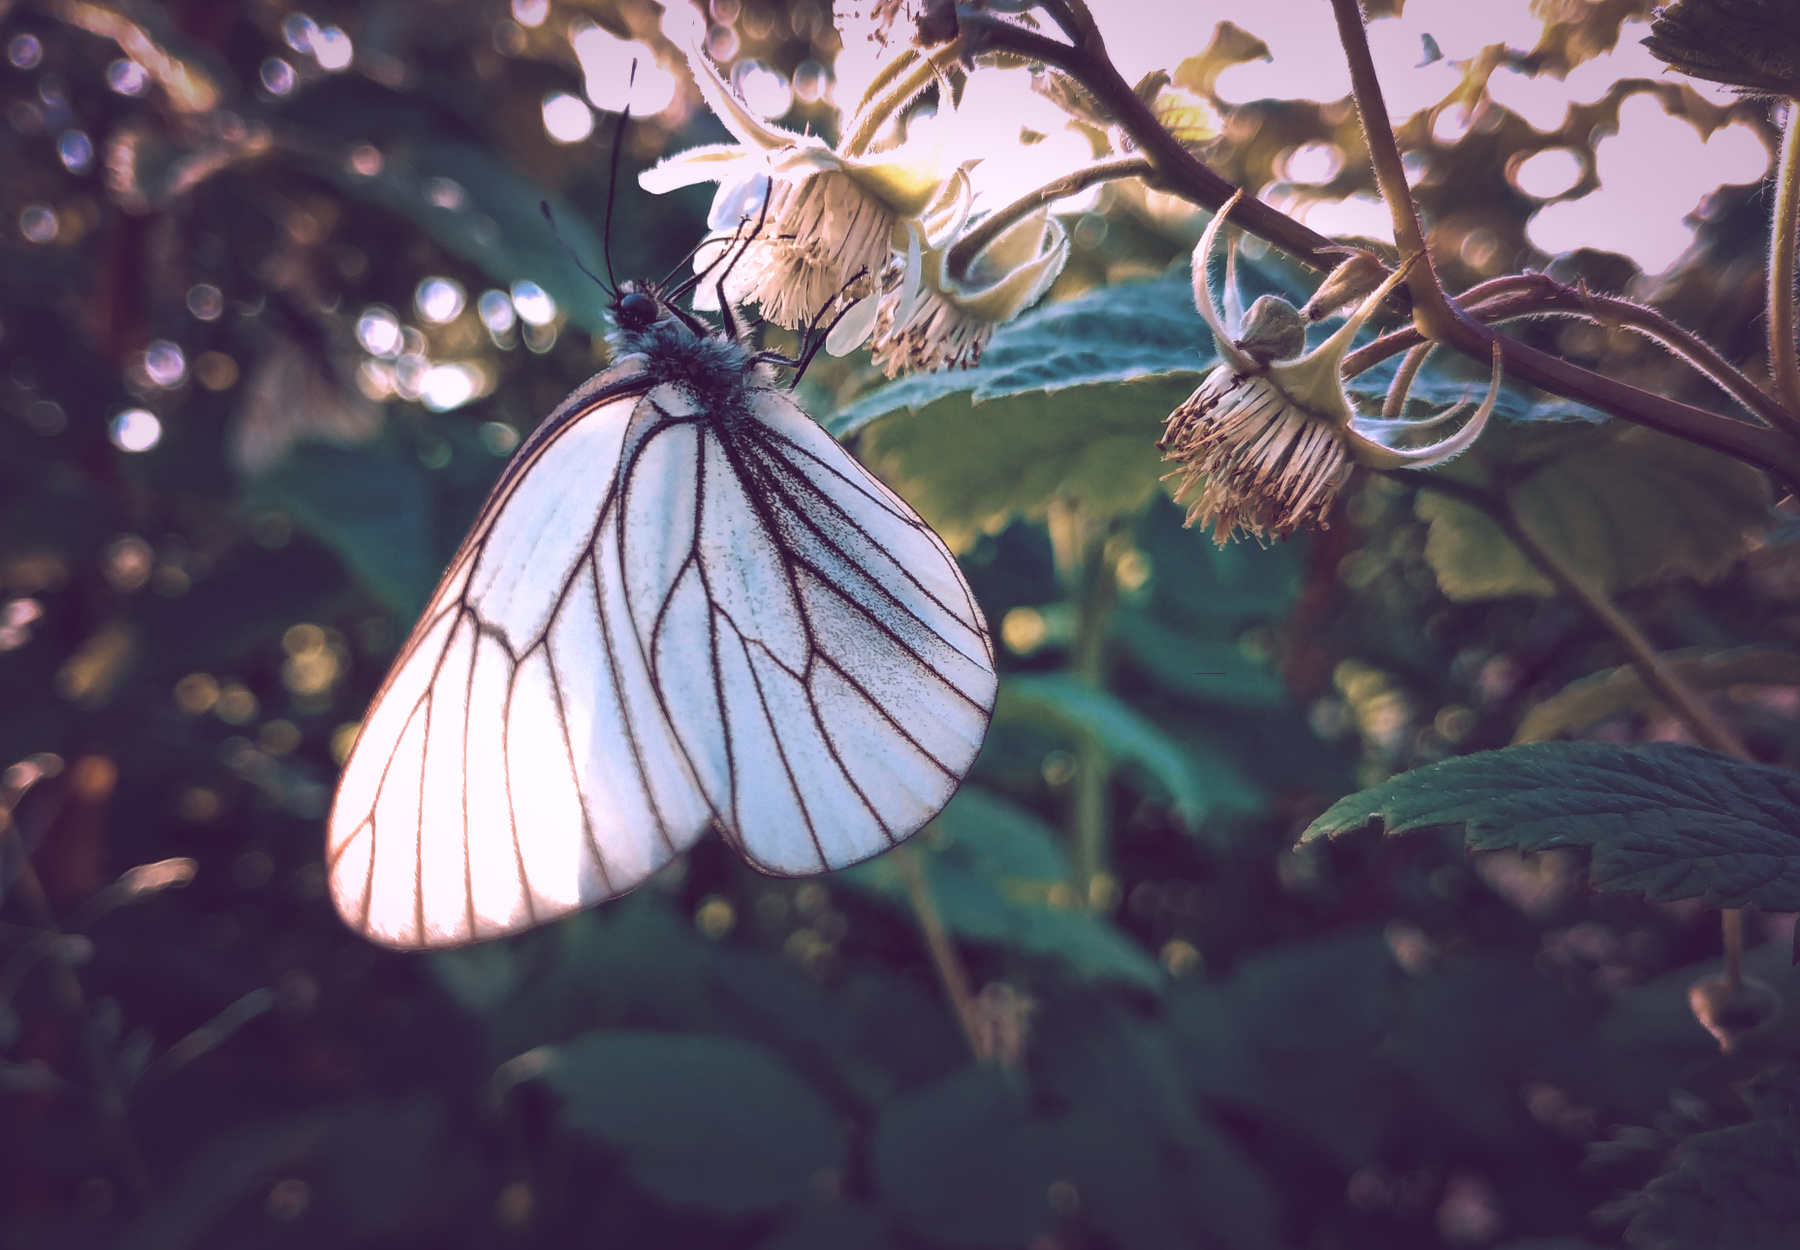 *** ветви малины проблески солнца сияние бабочка